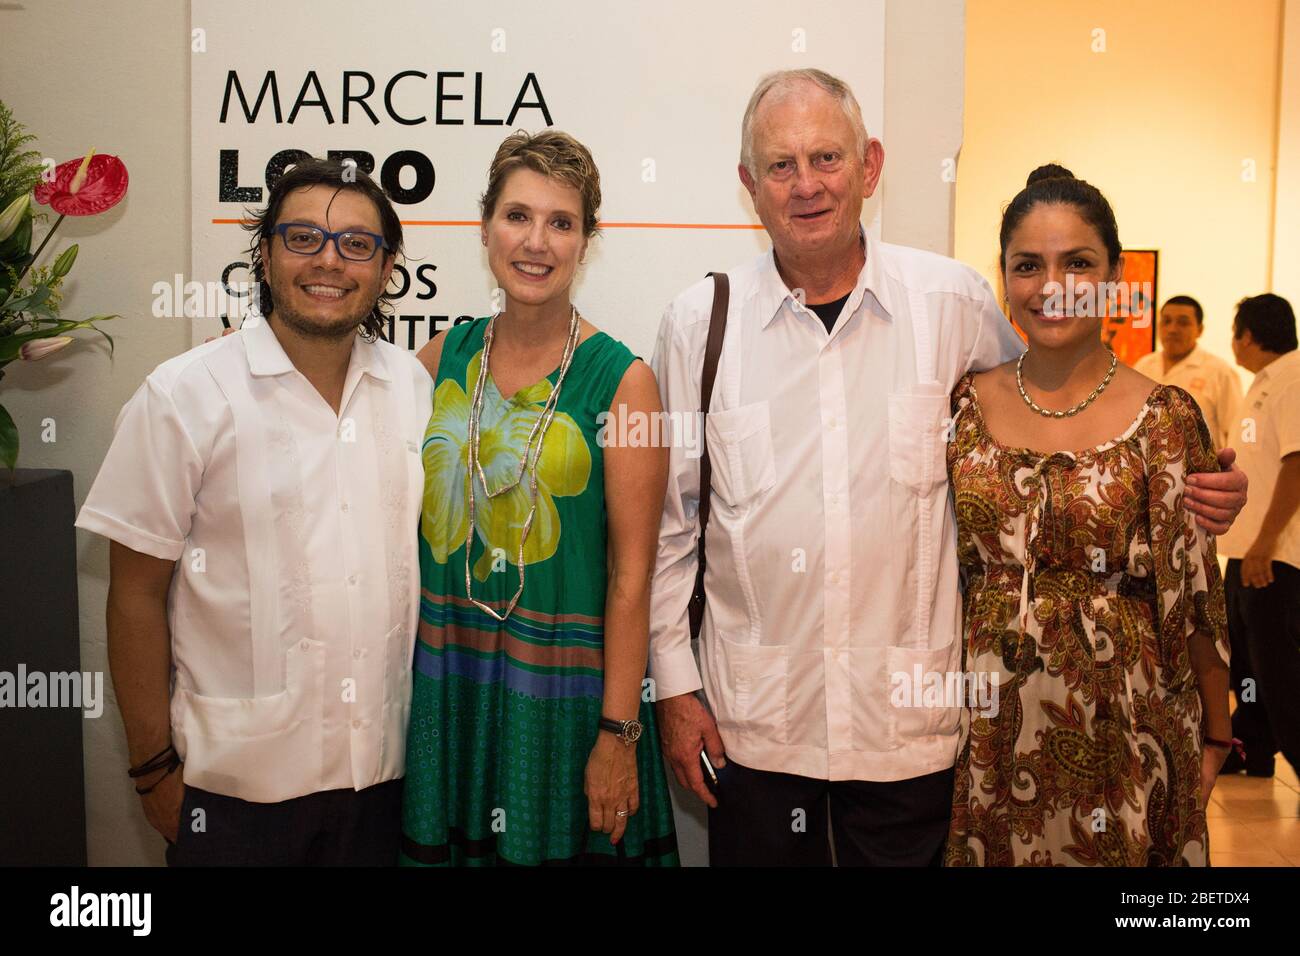 De izquierda a derecha el escultor mexicano Rivelino, la pintora mexicana Marcela Lobo, Ruben Dreijanski, Nancy Reyes durante la exposicion de Marcela Stock Photo